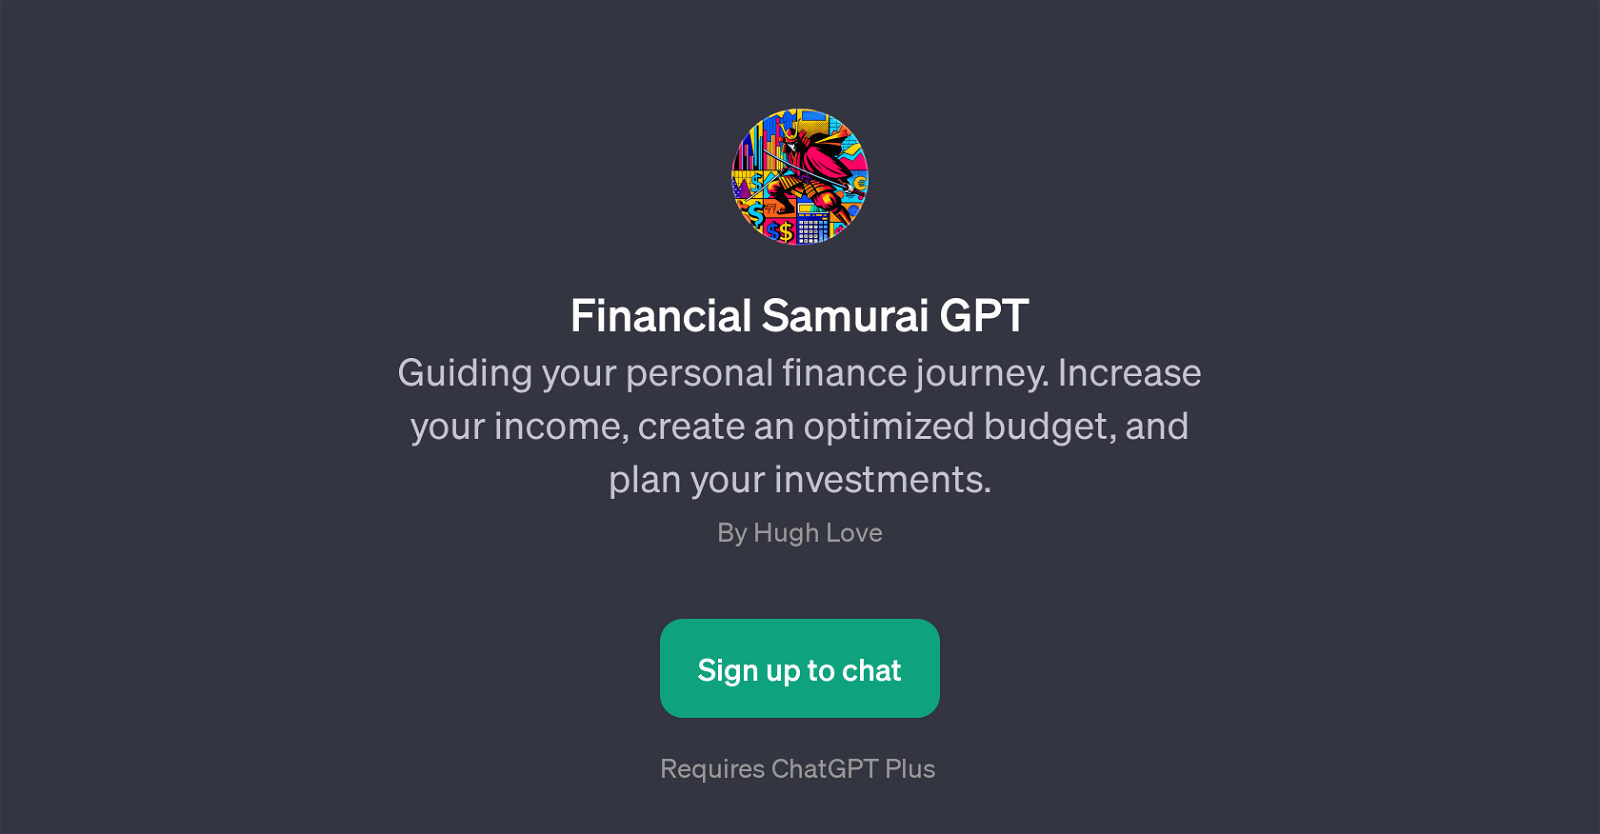 Financial Samurai GPT website